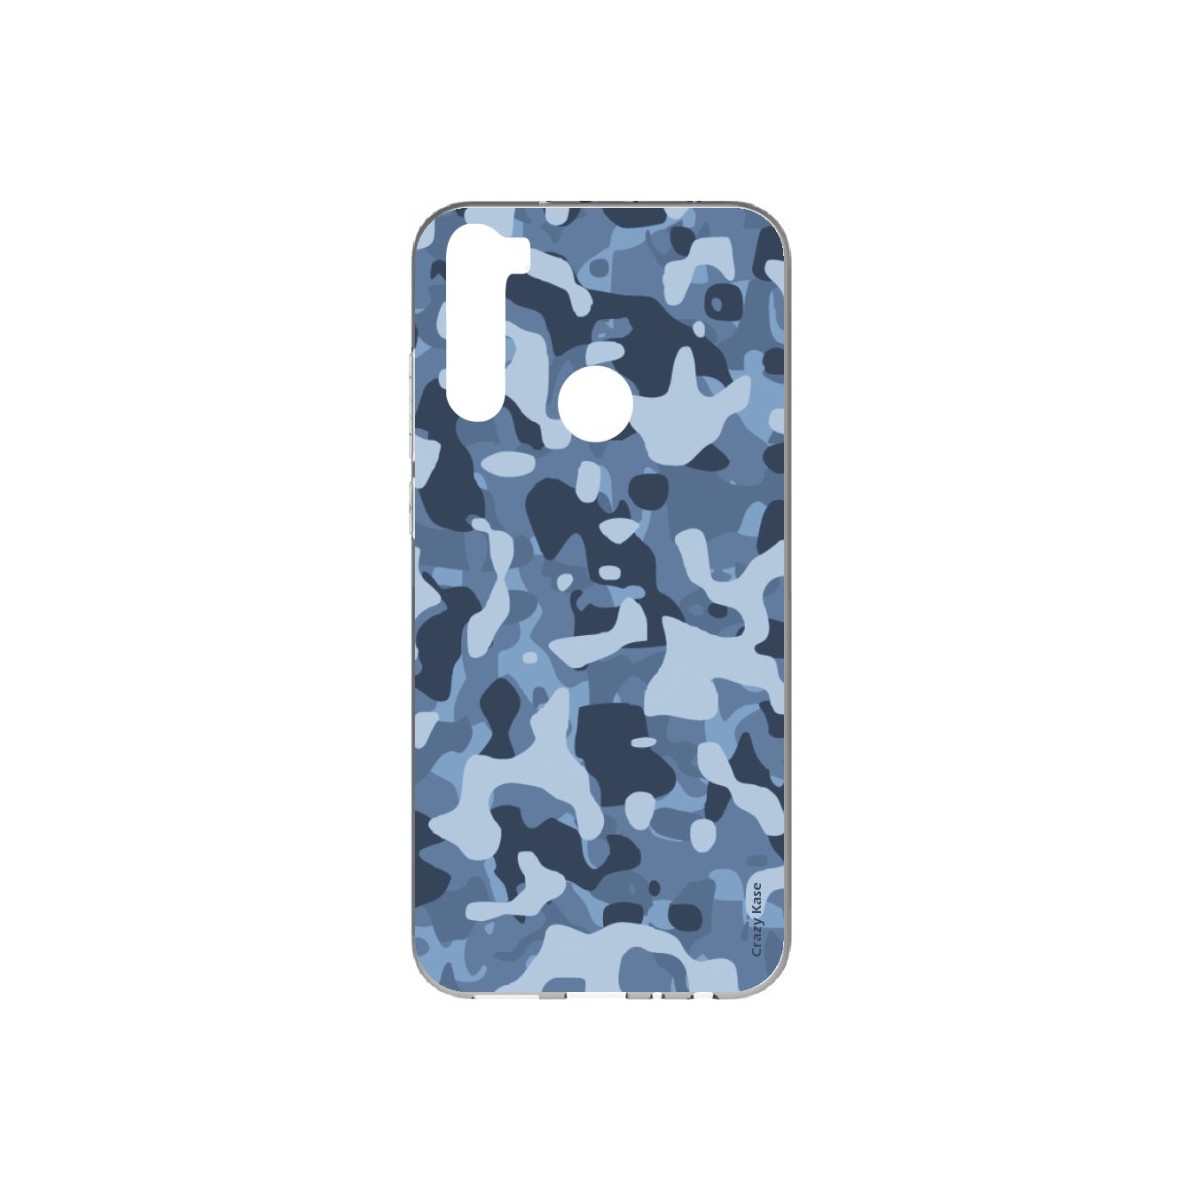 Coque Xiaomi Redmi Note 8T souple Camouflage militaire bleu Crazy Kase